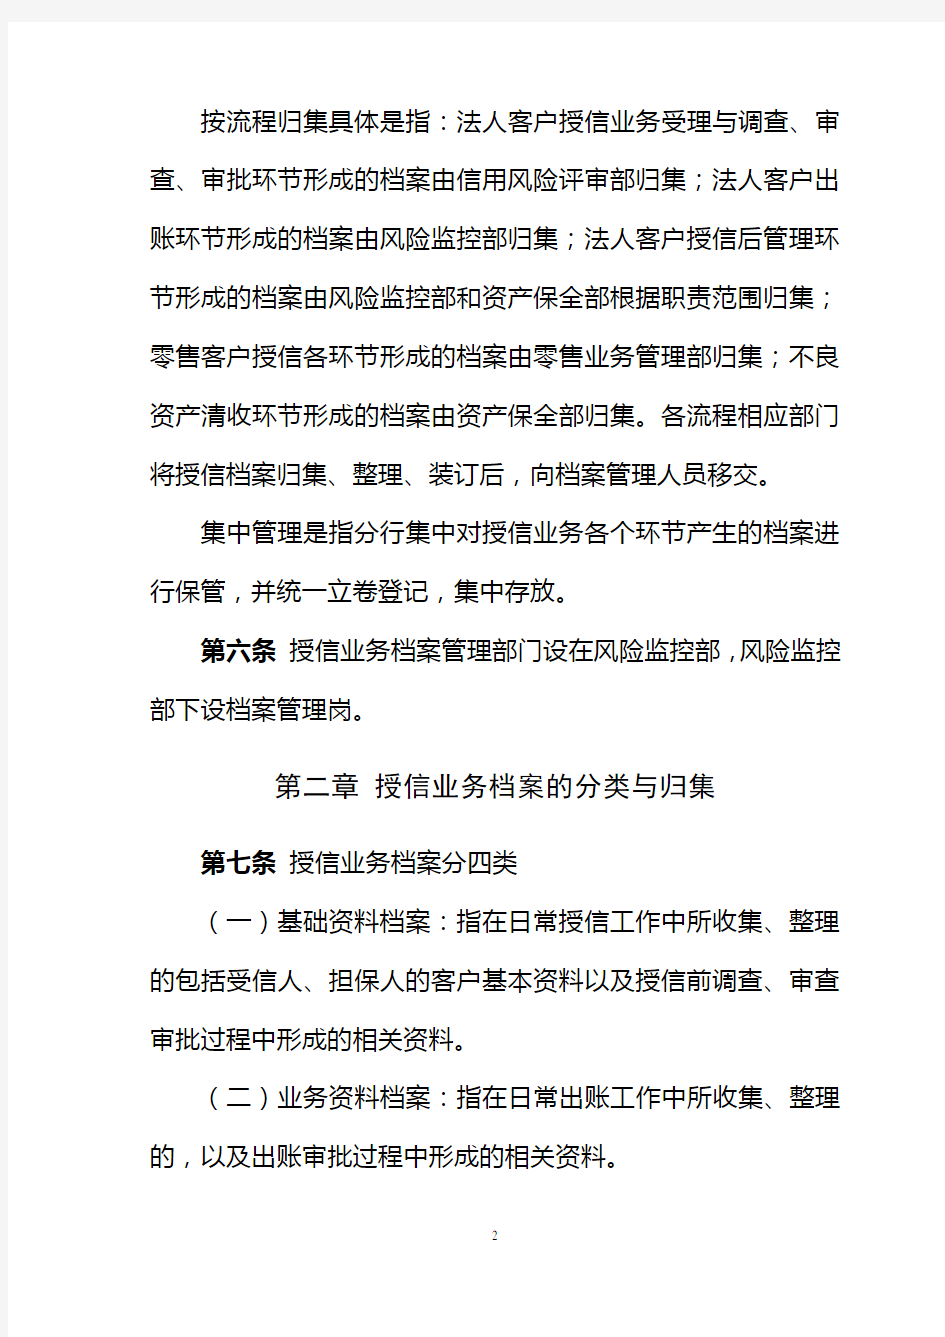 2015年5月29日济南分行授信档案管理细则